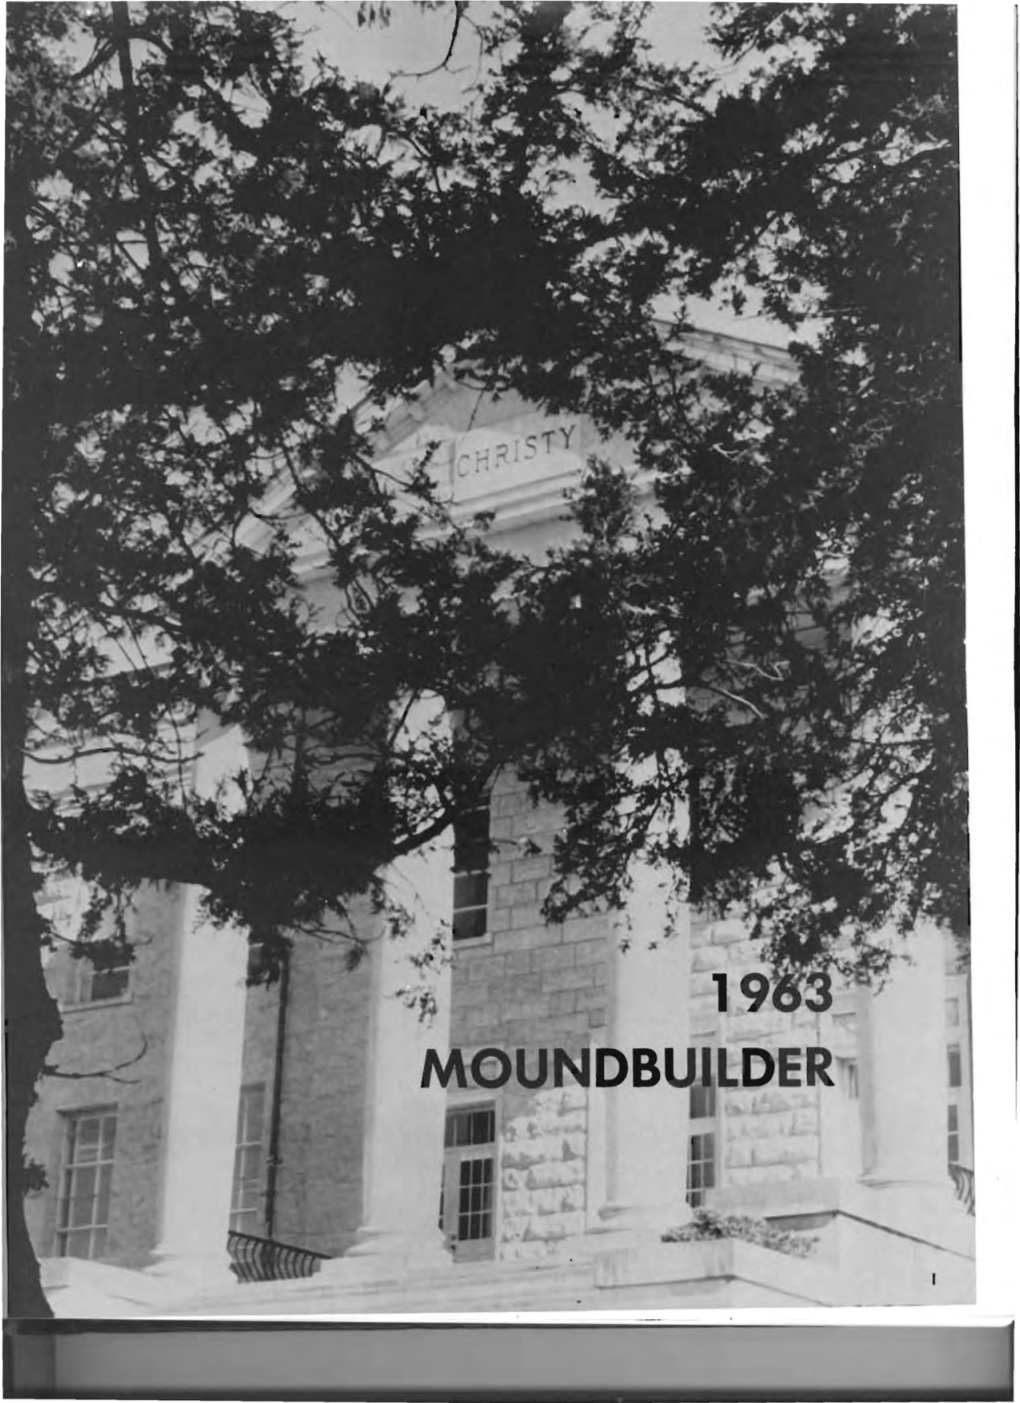 1963 Moundbuilder